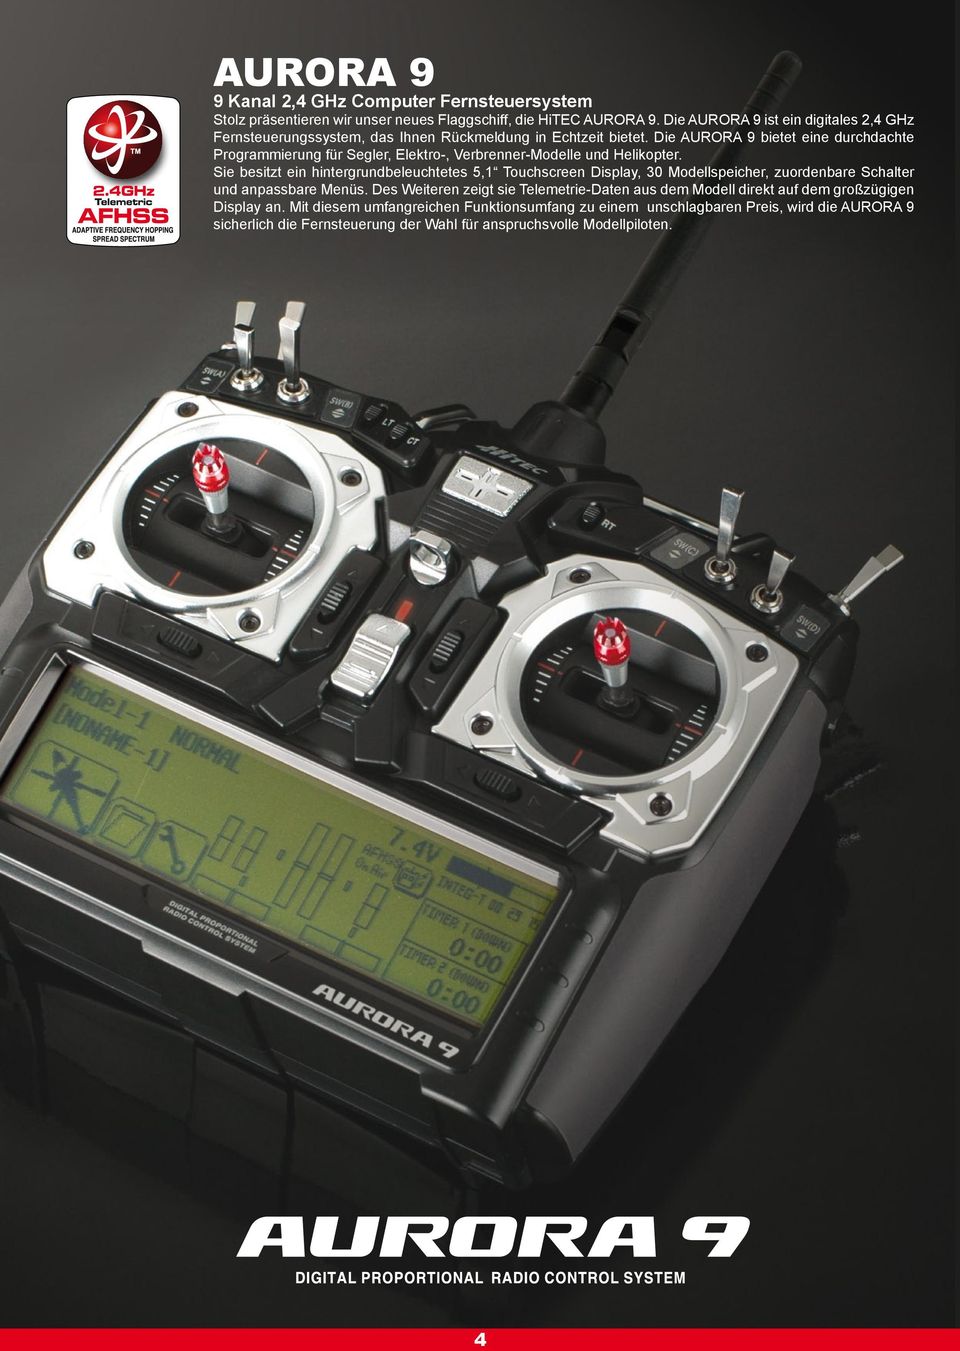 Die AURORA 9 bietet eine durchdachte Programmierung für Segler, Elektro-, Verbrenner-Modelle und Helikopter.